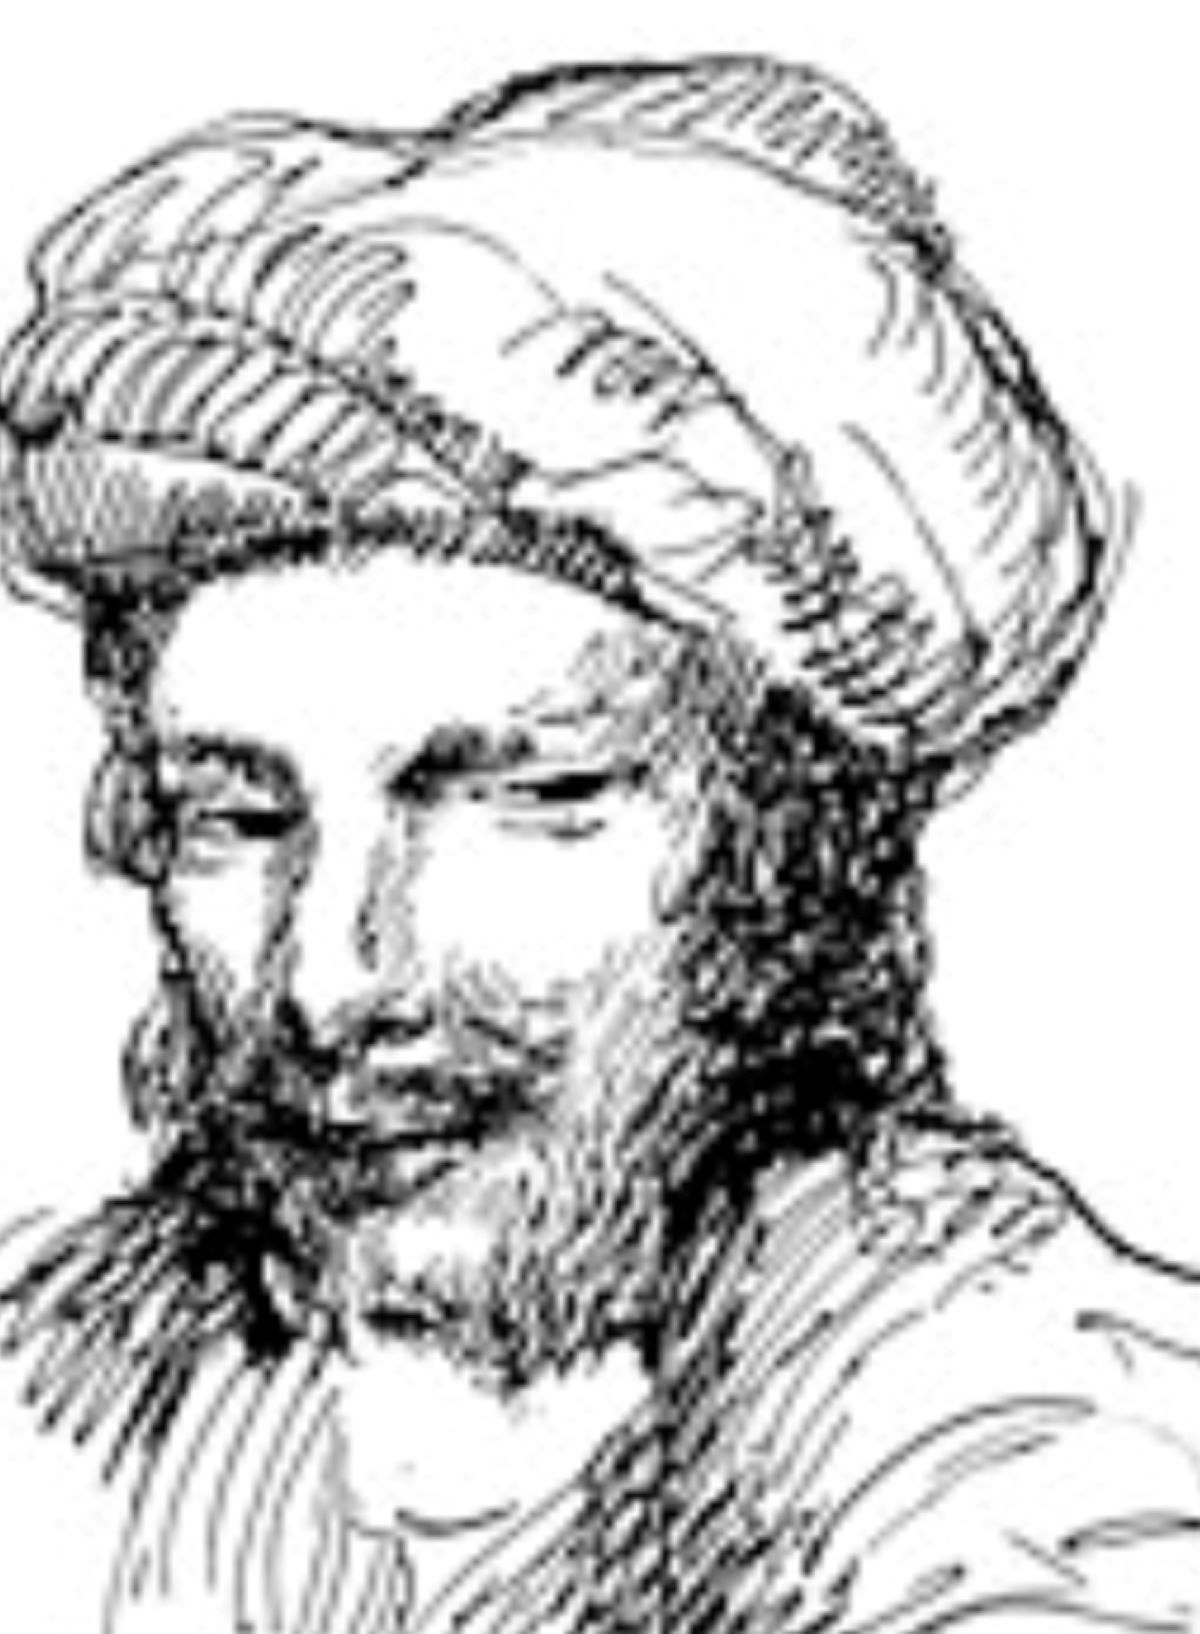 Kisah Abu Nawas yang Mengajarkan Tabayyun Sebelum Mengambil Tindakan, yuk Dibaca!